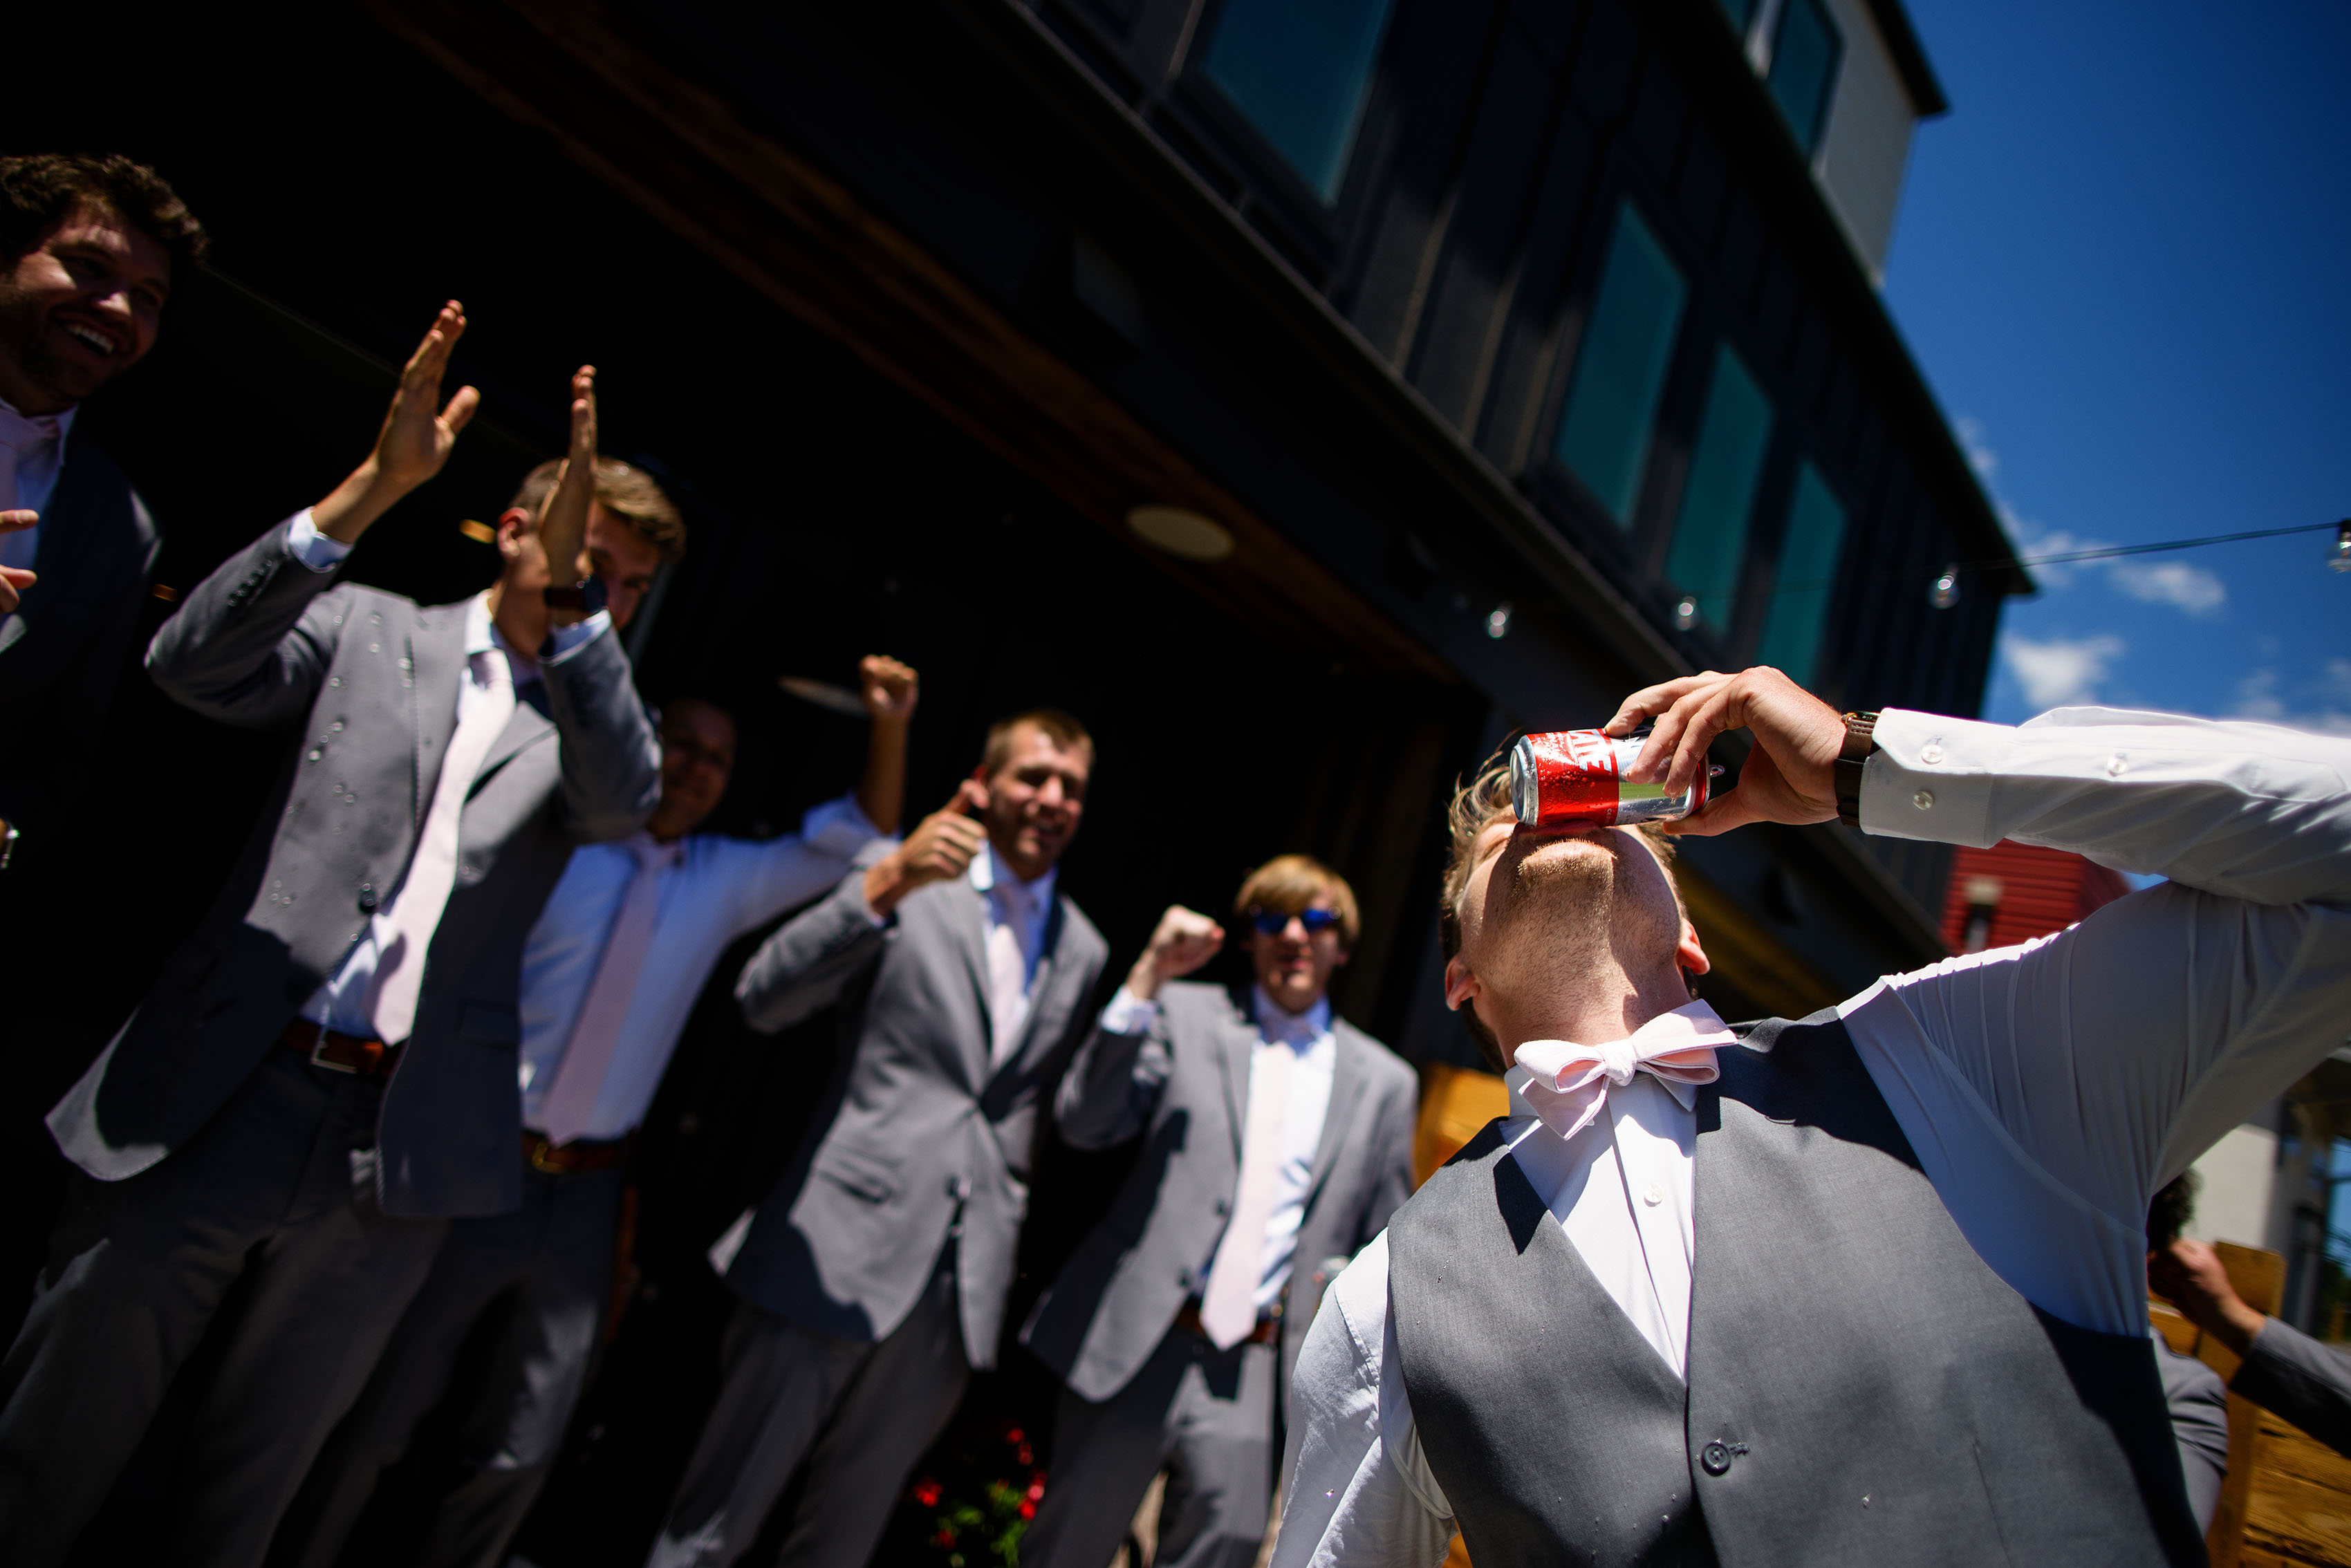 The groom shotguns a beer as groomsmen cheer